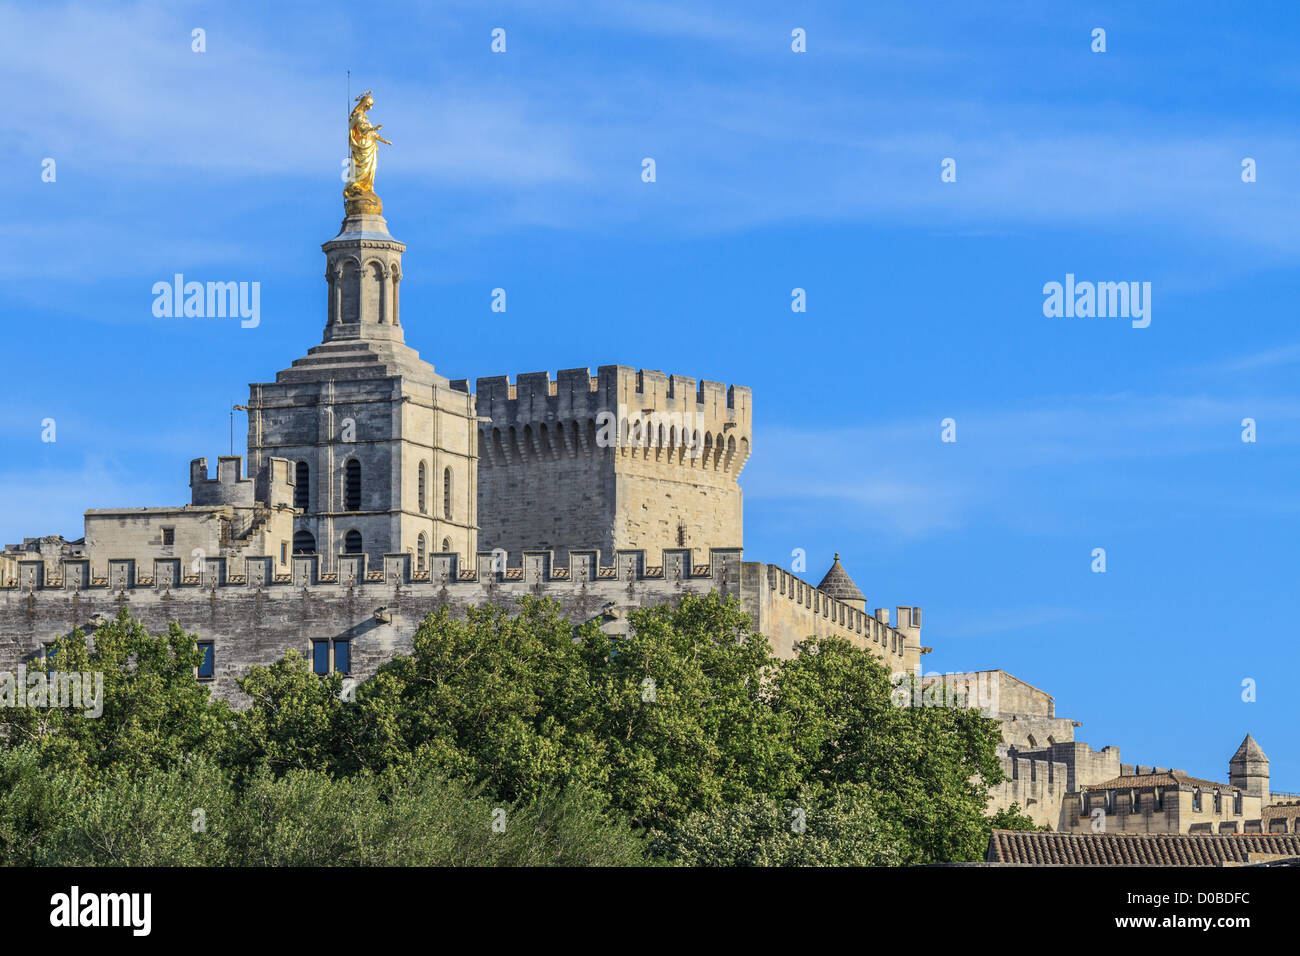 Avignon - Vue sur Palais des Papes et de l'église Notre-Dame des dômes, Provence, France Banque D'Images